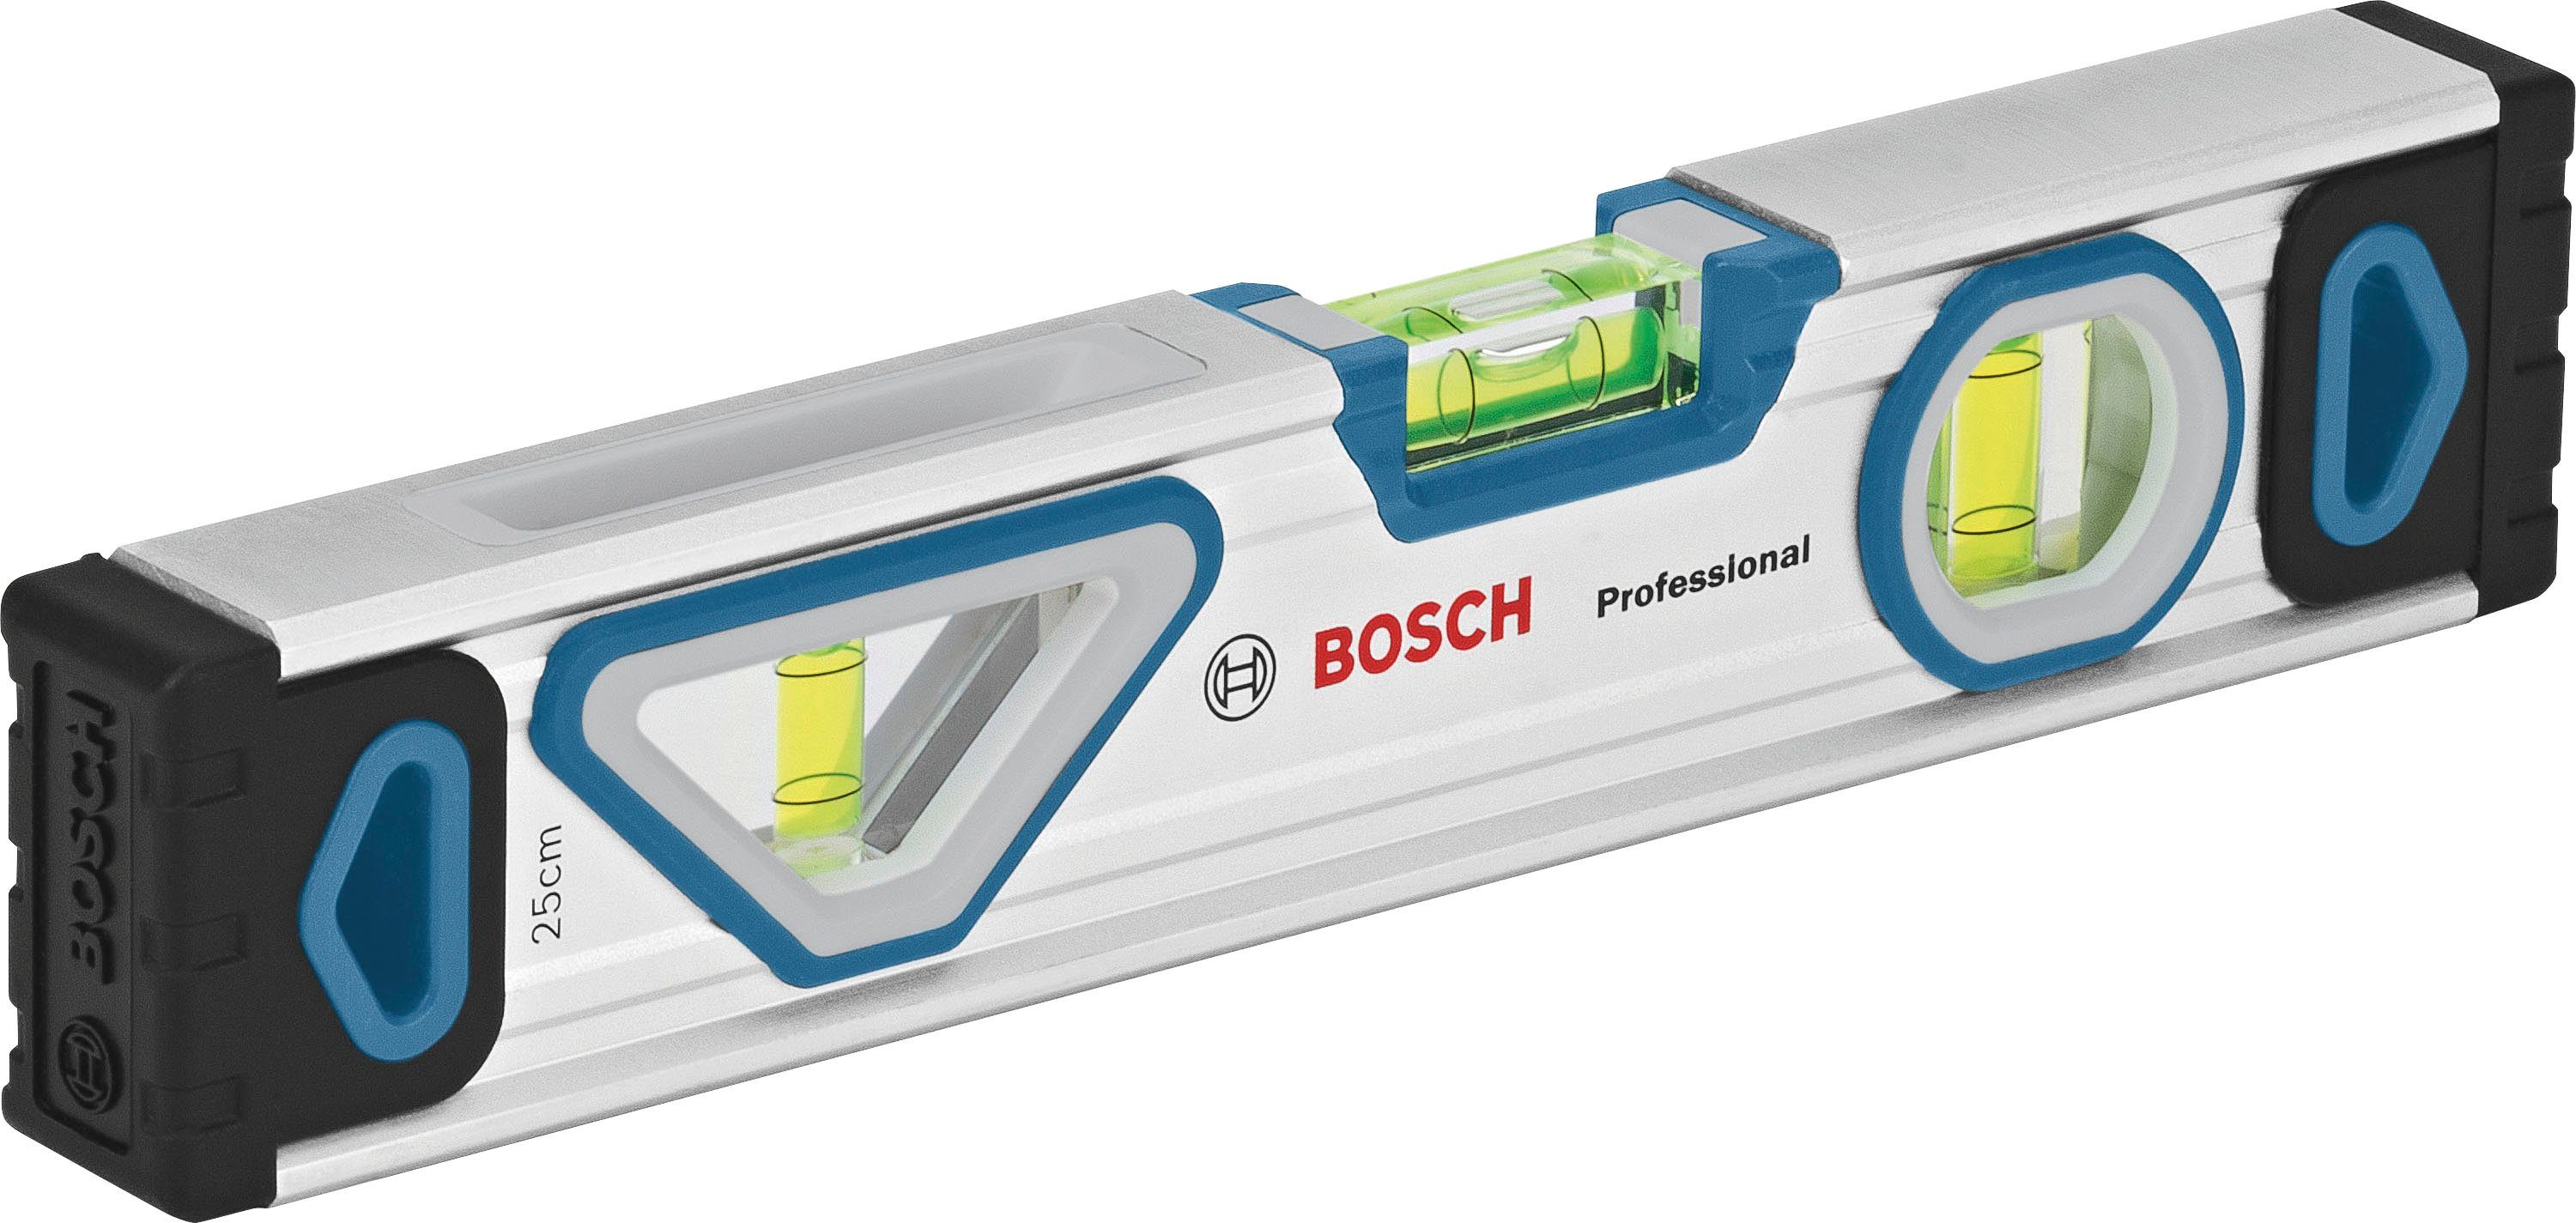 Bosch Professional Werkzeugset (1600A027M3), 13-tlg., und Universalmesser Ersatzklingen Maßband, Wasserwaage